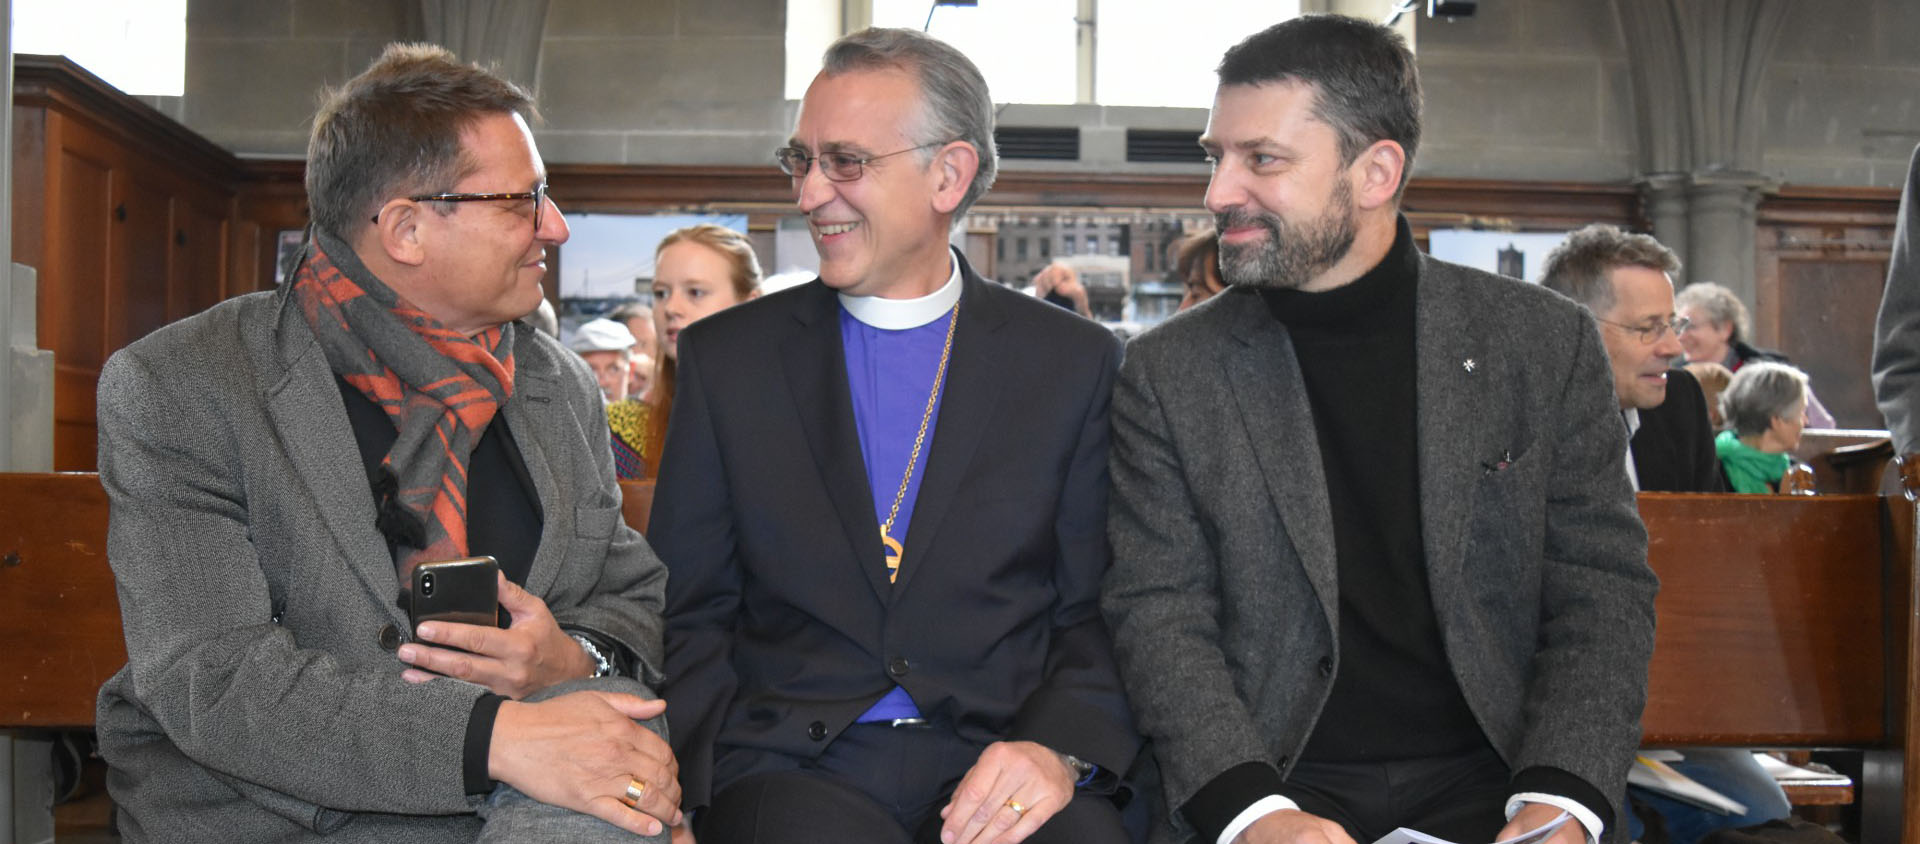 Mgr Felix Gmür, avec Mgr Harald Rein, président du Conseil suisse des religions (CSR), et Gottfried Locher, président de l'EERS | © Jacques Berset